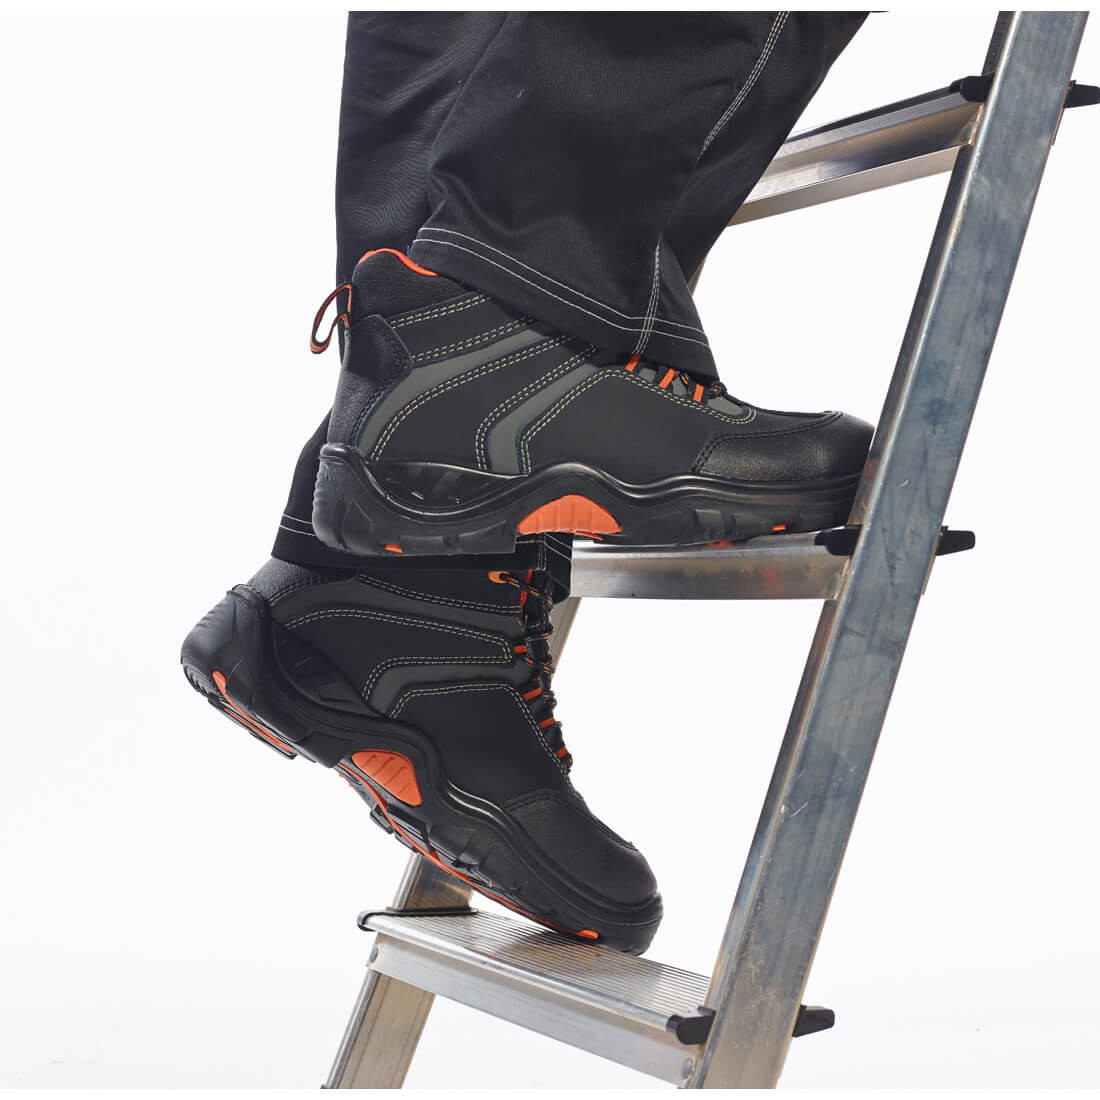 Brodequin Composite Operis S3HRO - Les chaussures de protection